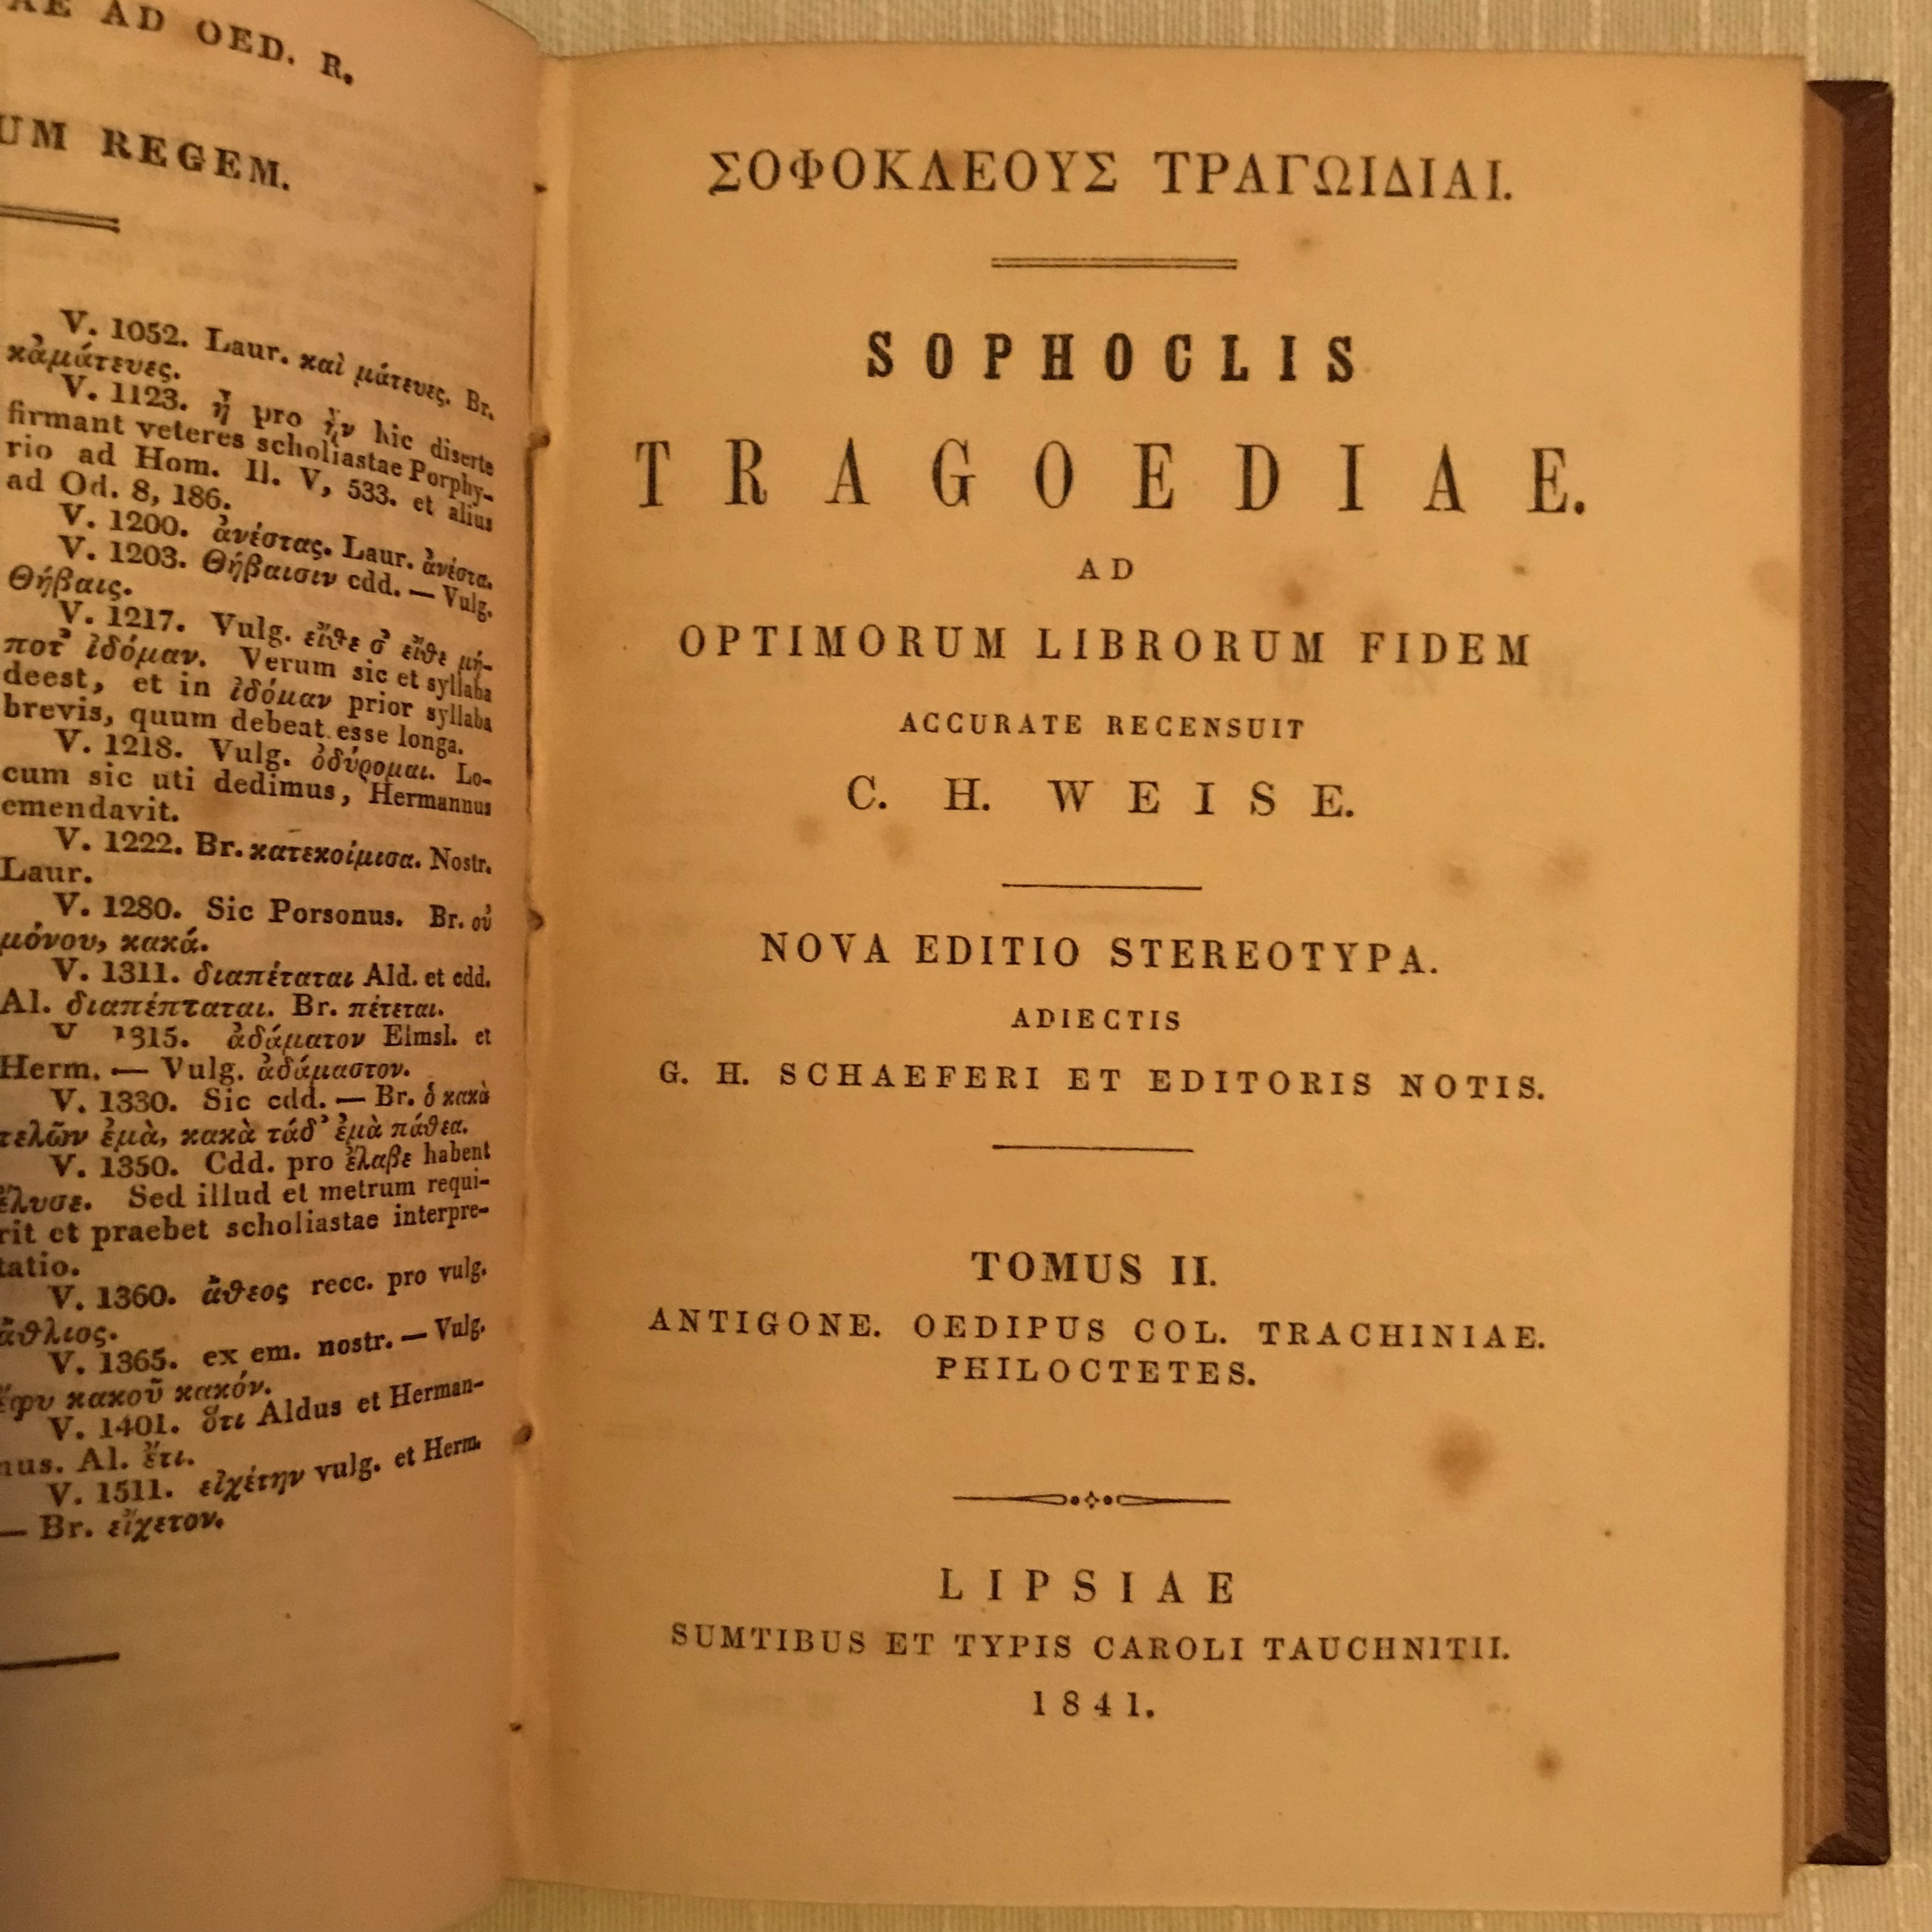 Die insgesamt sieben Tragödien von Sophokles sind Teil einer 14-bändigen Sammlung klassisch-griechischer Dichtkunst, herausgegeben zwischen 1829 und 1844, gedruckt in Leipzig